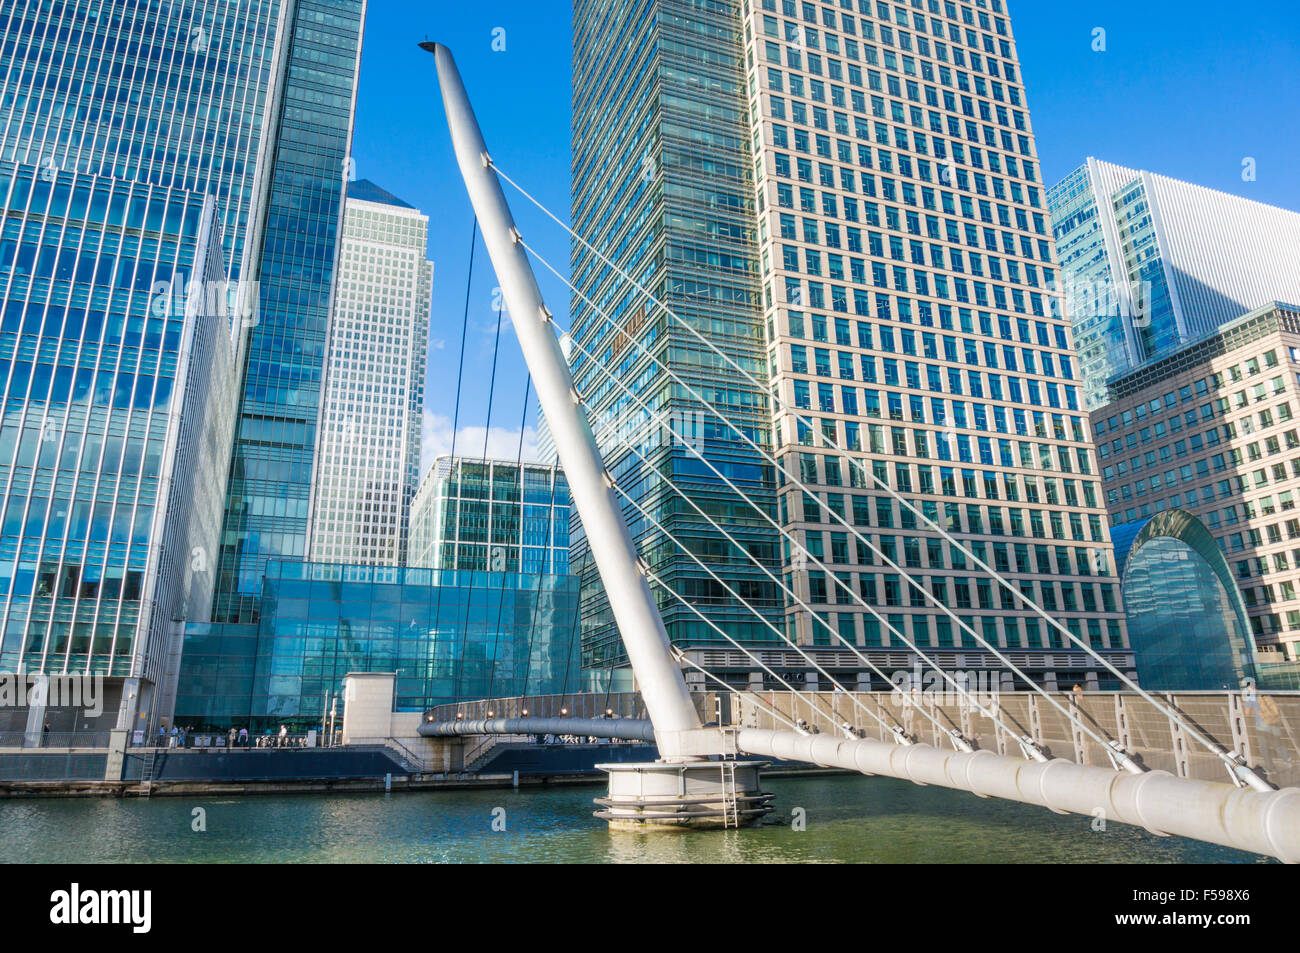 Canary Wharf gratte-ciel du quartier financier et bancaire de la CDB Docklands Londres Angleterre Royaume-uni GB EU Europe Banque D'Images